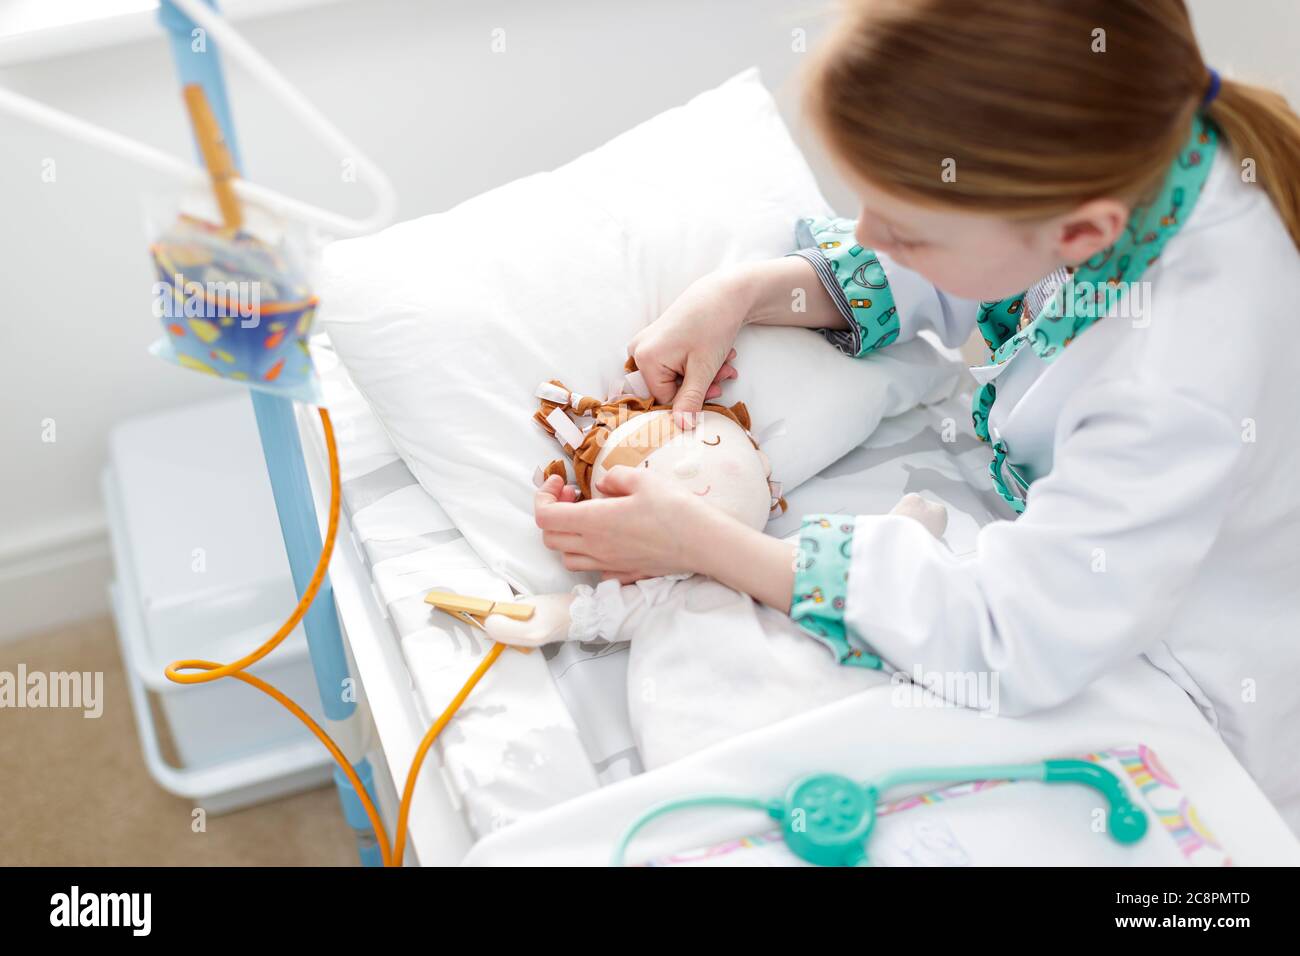 Junges Mädchen als Arzt gekleidet, das Gips auf den Kopf der Puppe in einem Krankenhausbett aus Make-believe setzt Stockfoto